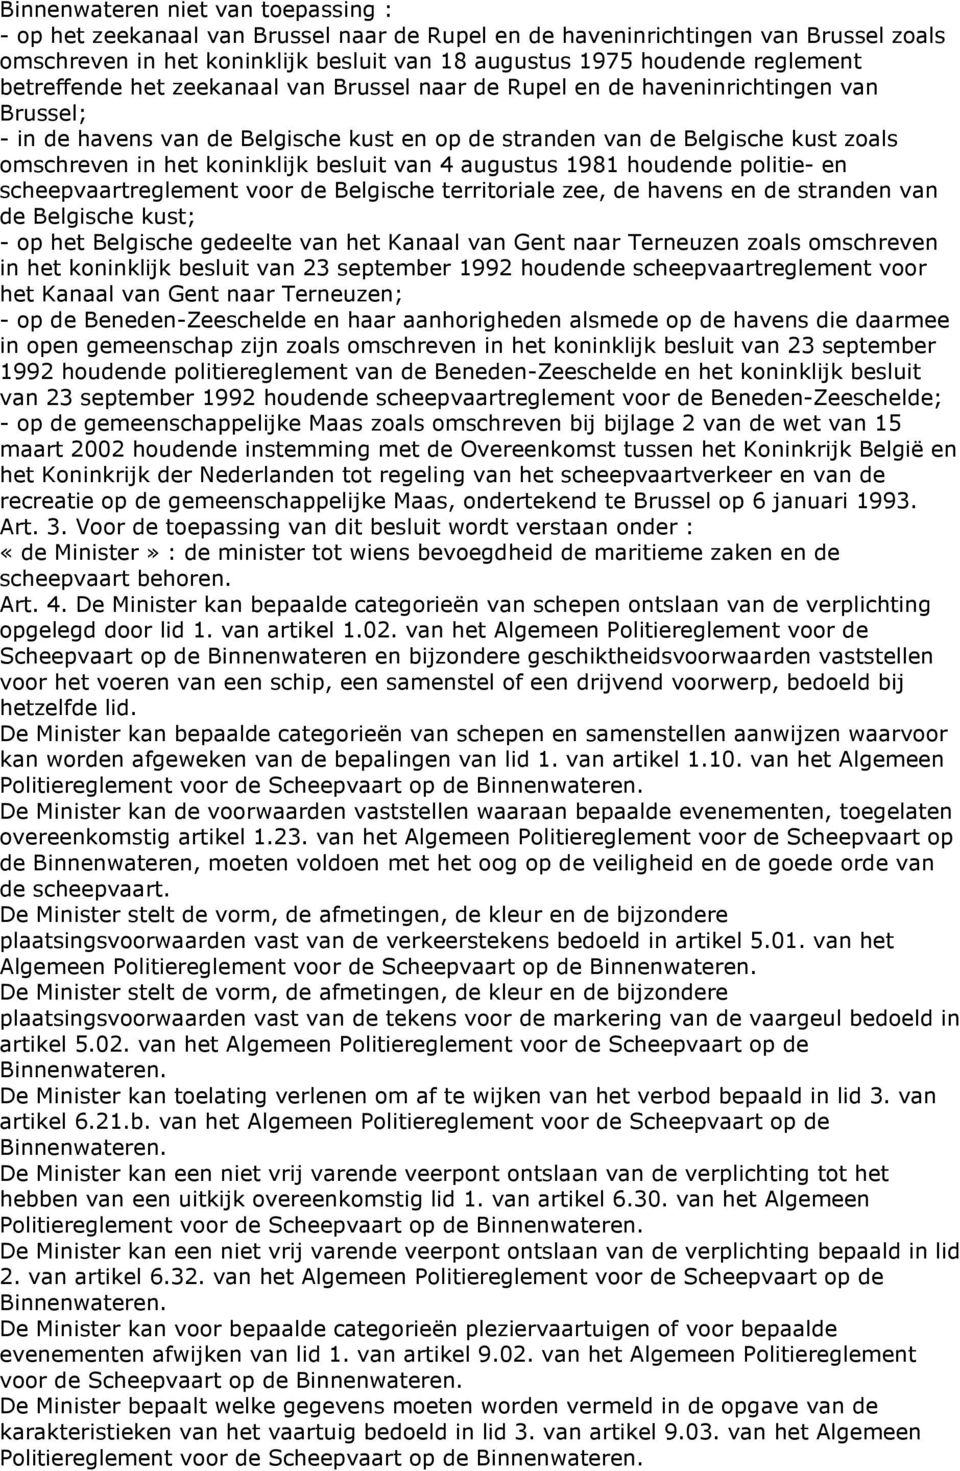 koninklijk besluit van 4 augustus 1981 houdende politie- en scheepvaartreglement voor de Belgische territoriale zee, de havens en de stranden van de Belgische kust; - op het Belgische gedeelte van